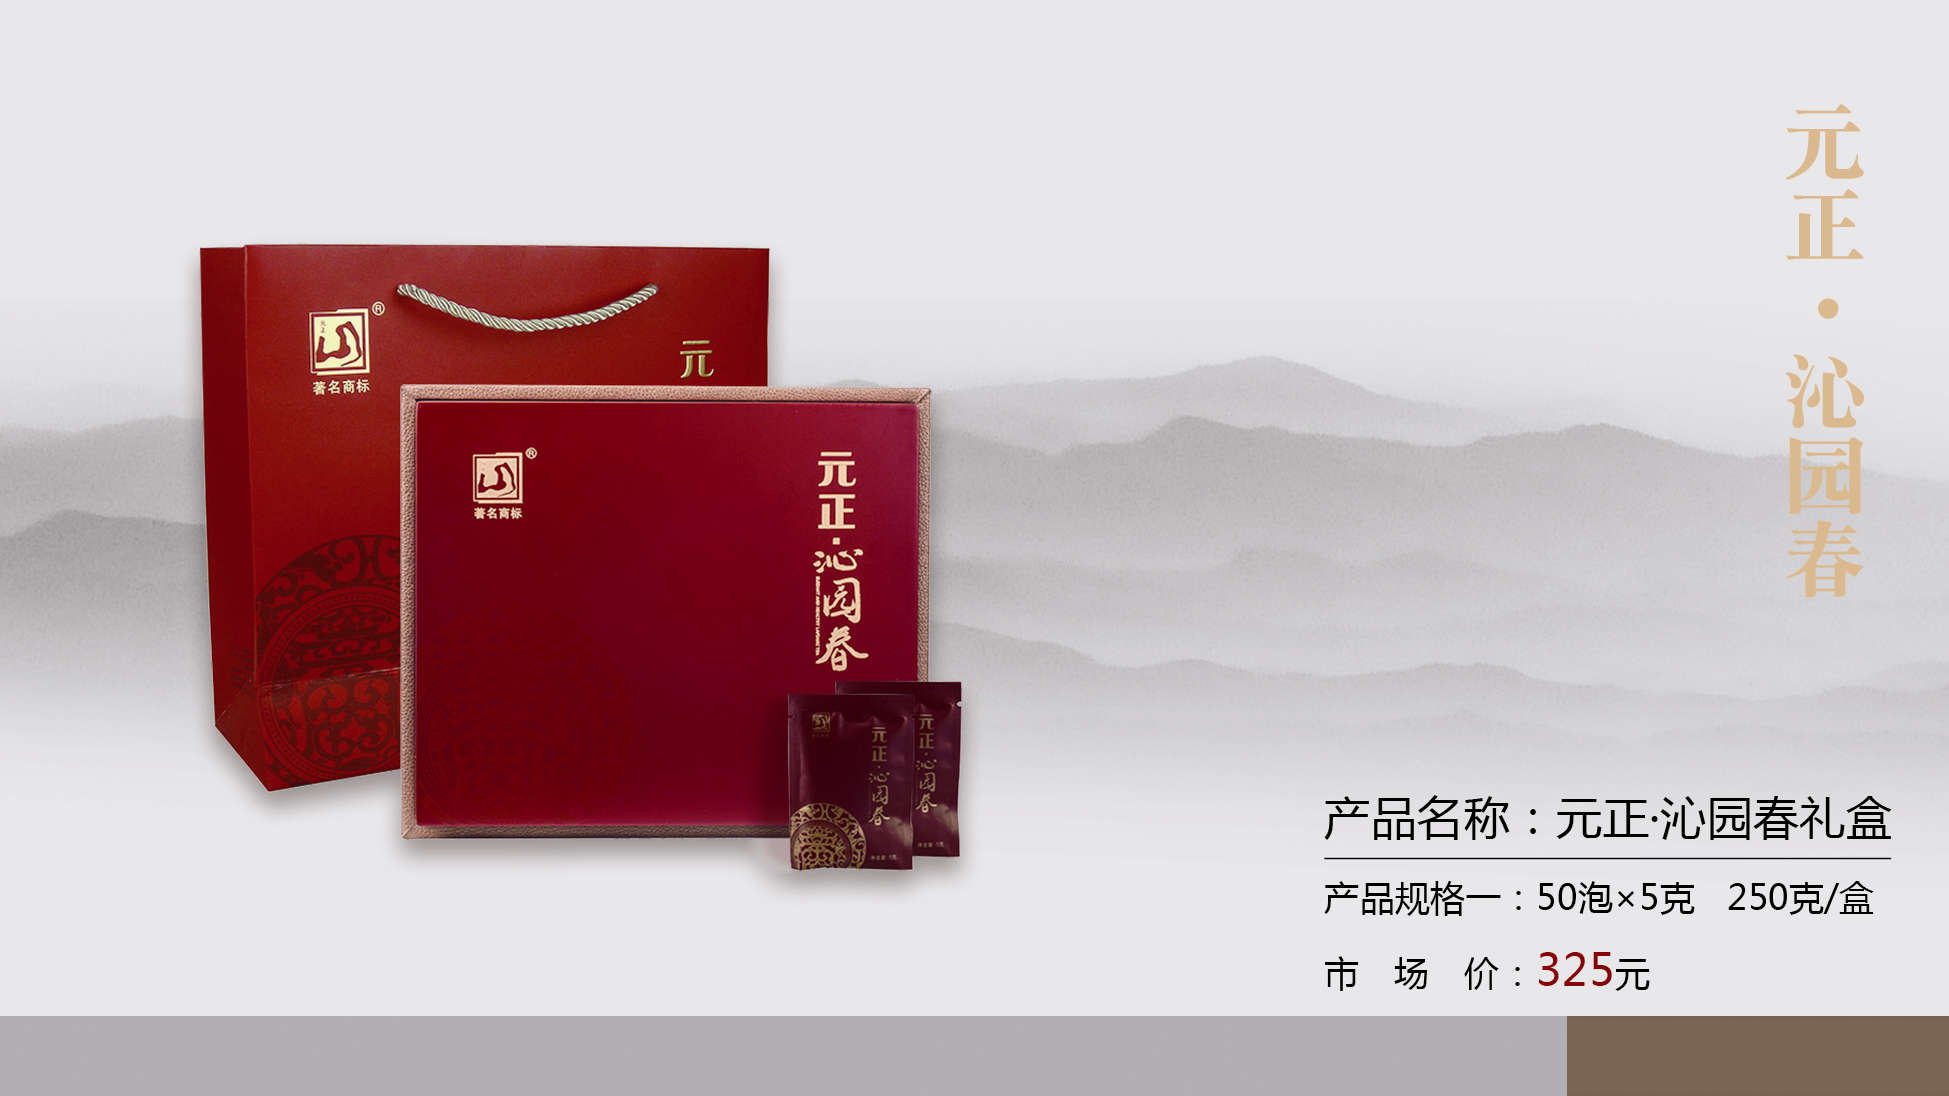 正山堂茶业旗下中国驰名商标“元正”牌系列红茶